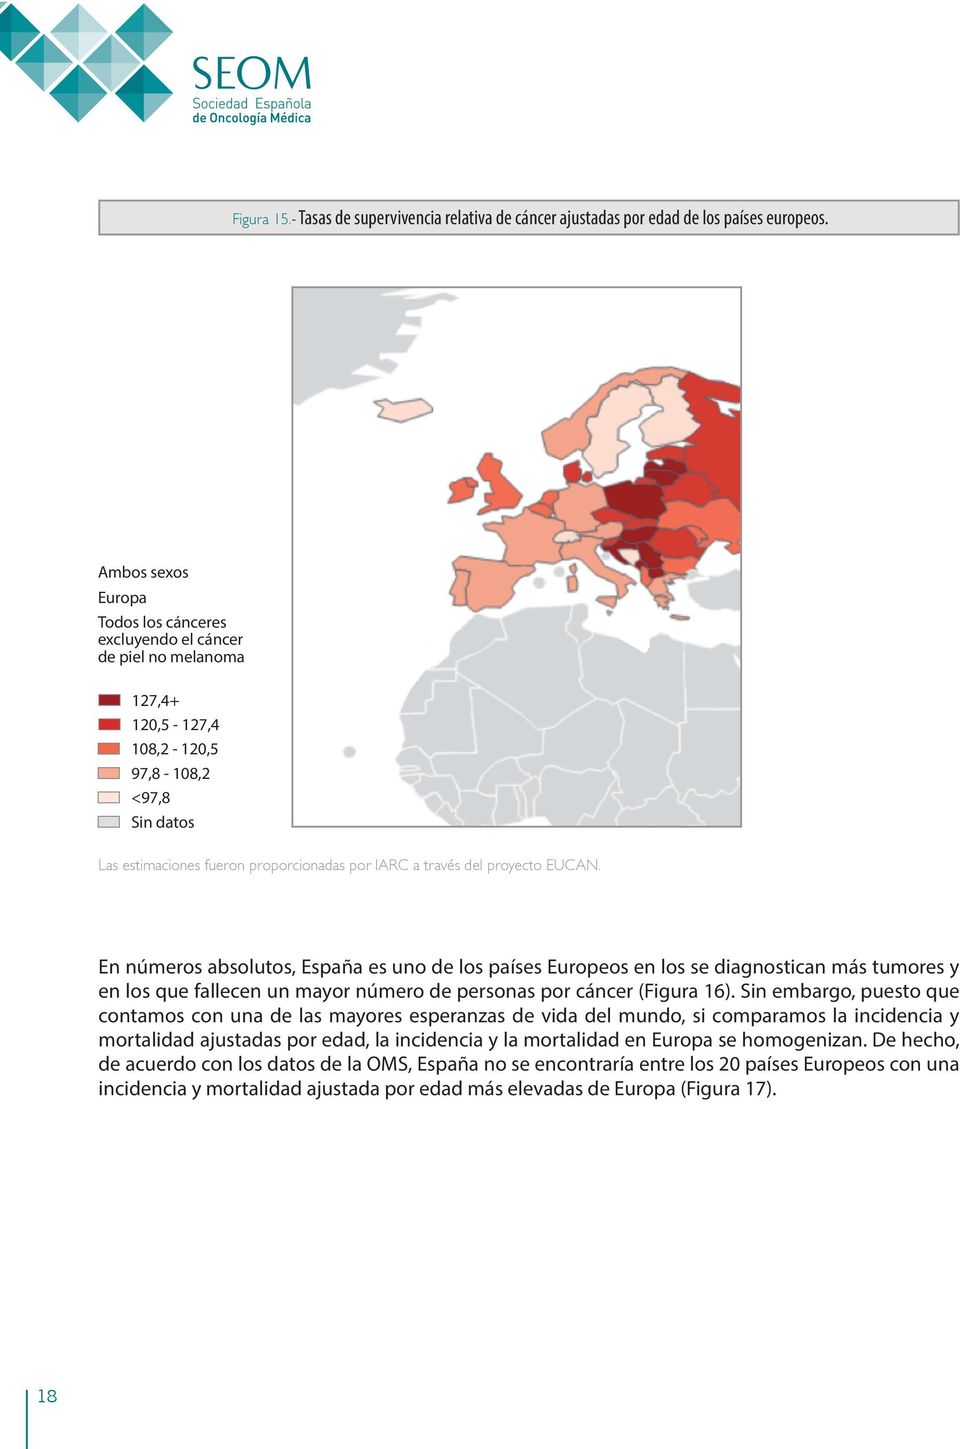 proyecto EUCAN. En números absolutos, España es uno de los países Europeos en los se diagnostican más tumores y en los que fallecen un mayor número de personas por cáncer (Figura 16).